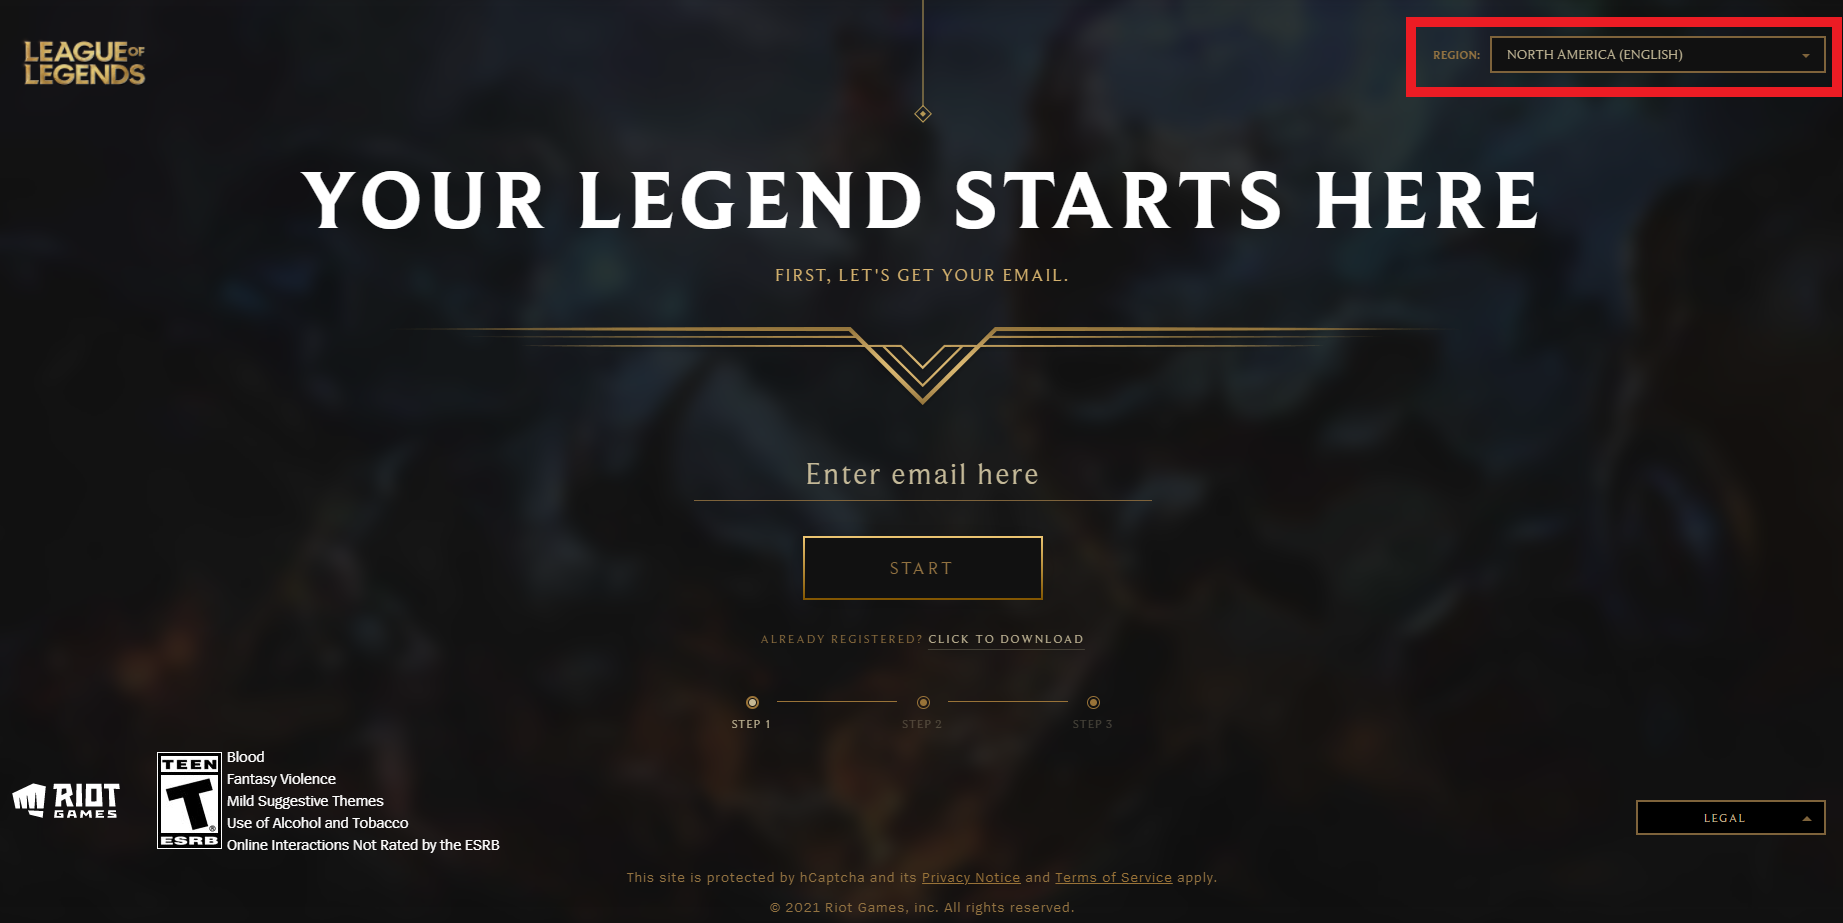 Página de registro de League of Legends: Aquí comienza vuestra leyenda.